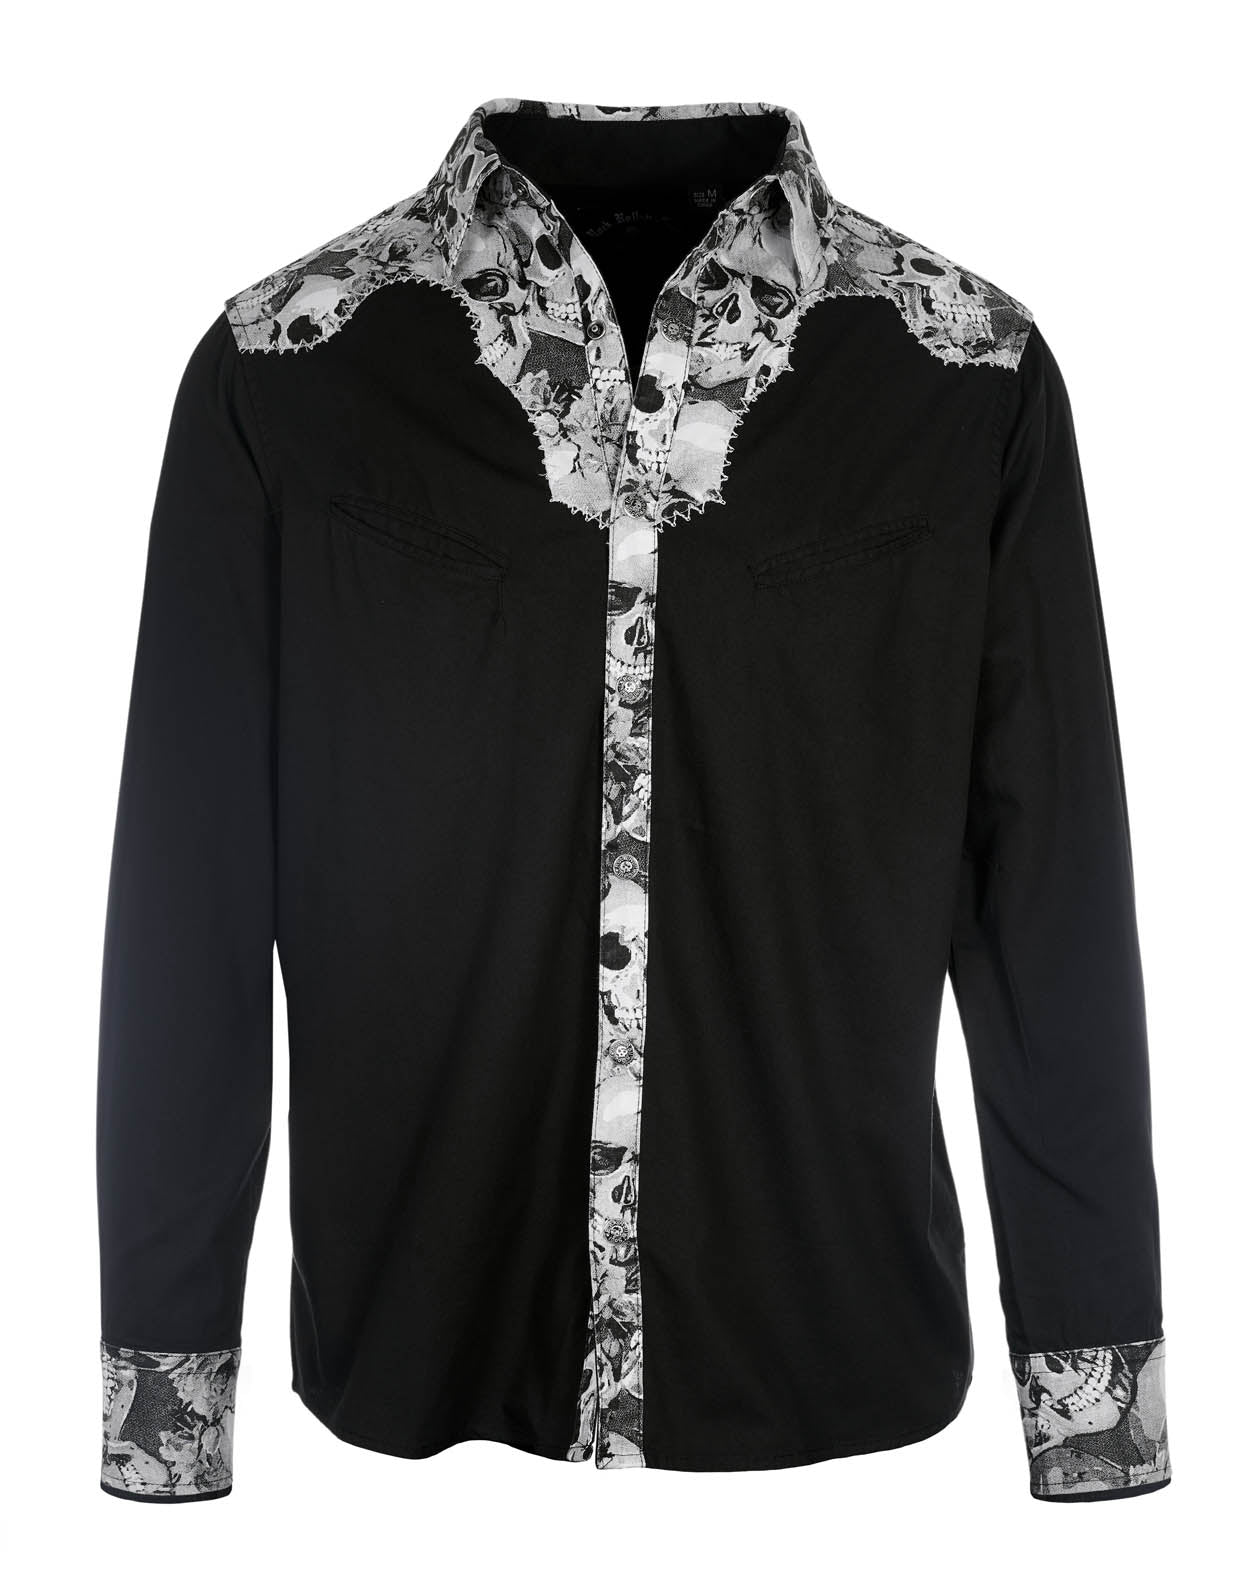 Men's LS Western Shirt | La Grange in Black by Rock Roll n Soul